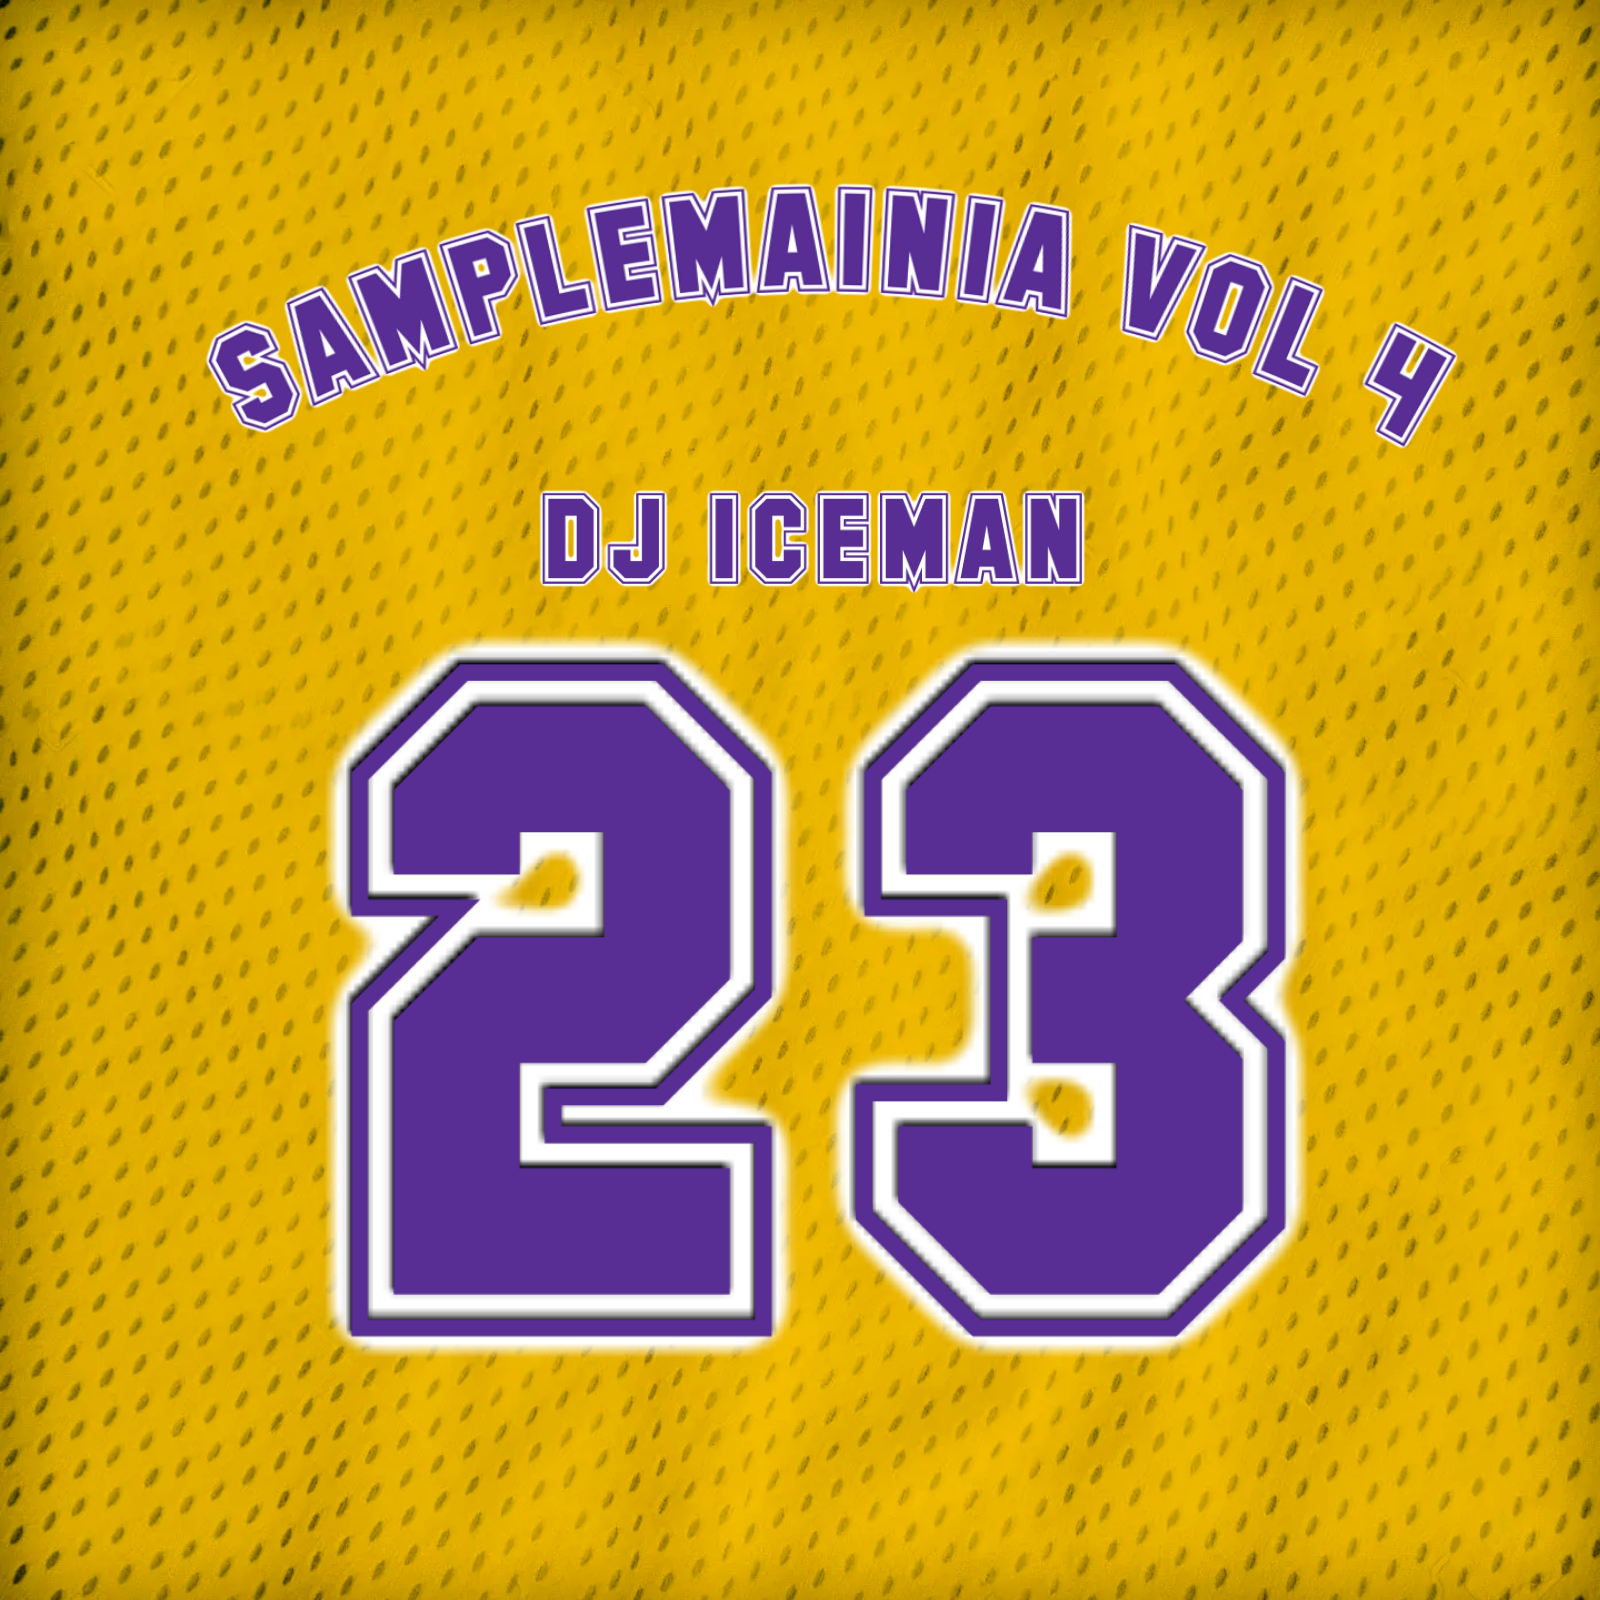 Dj Iceman-Samplemania Vol 4